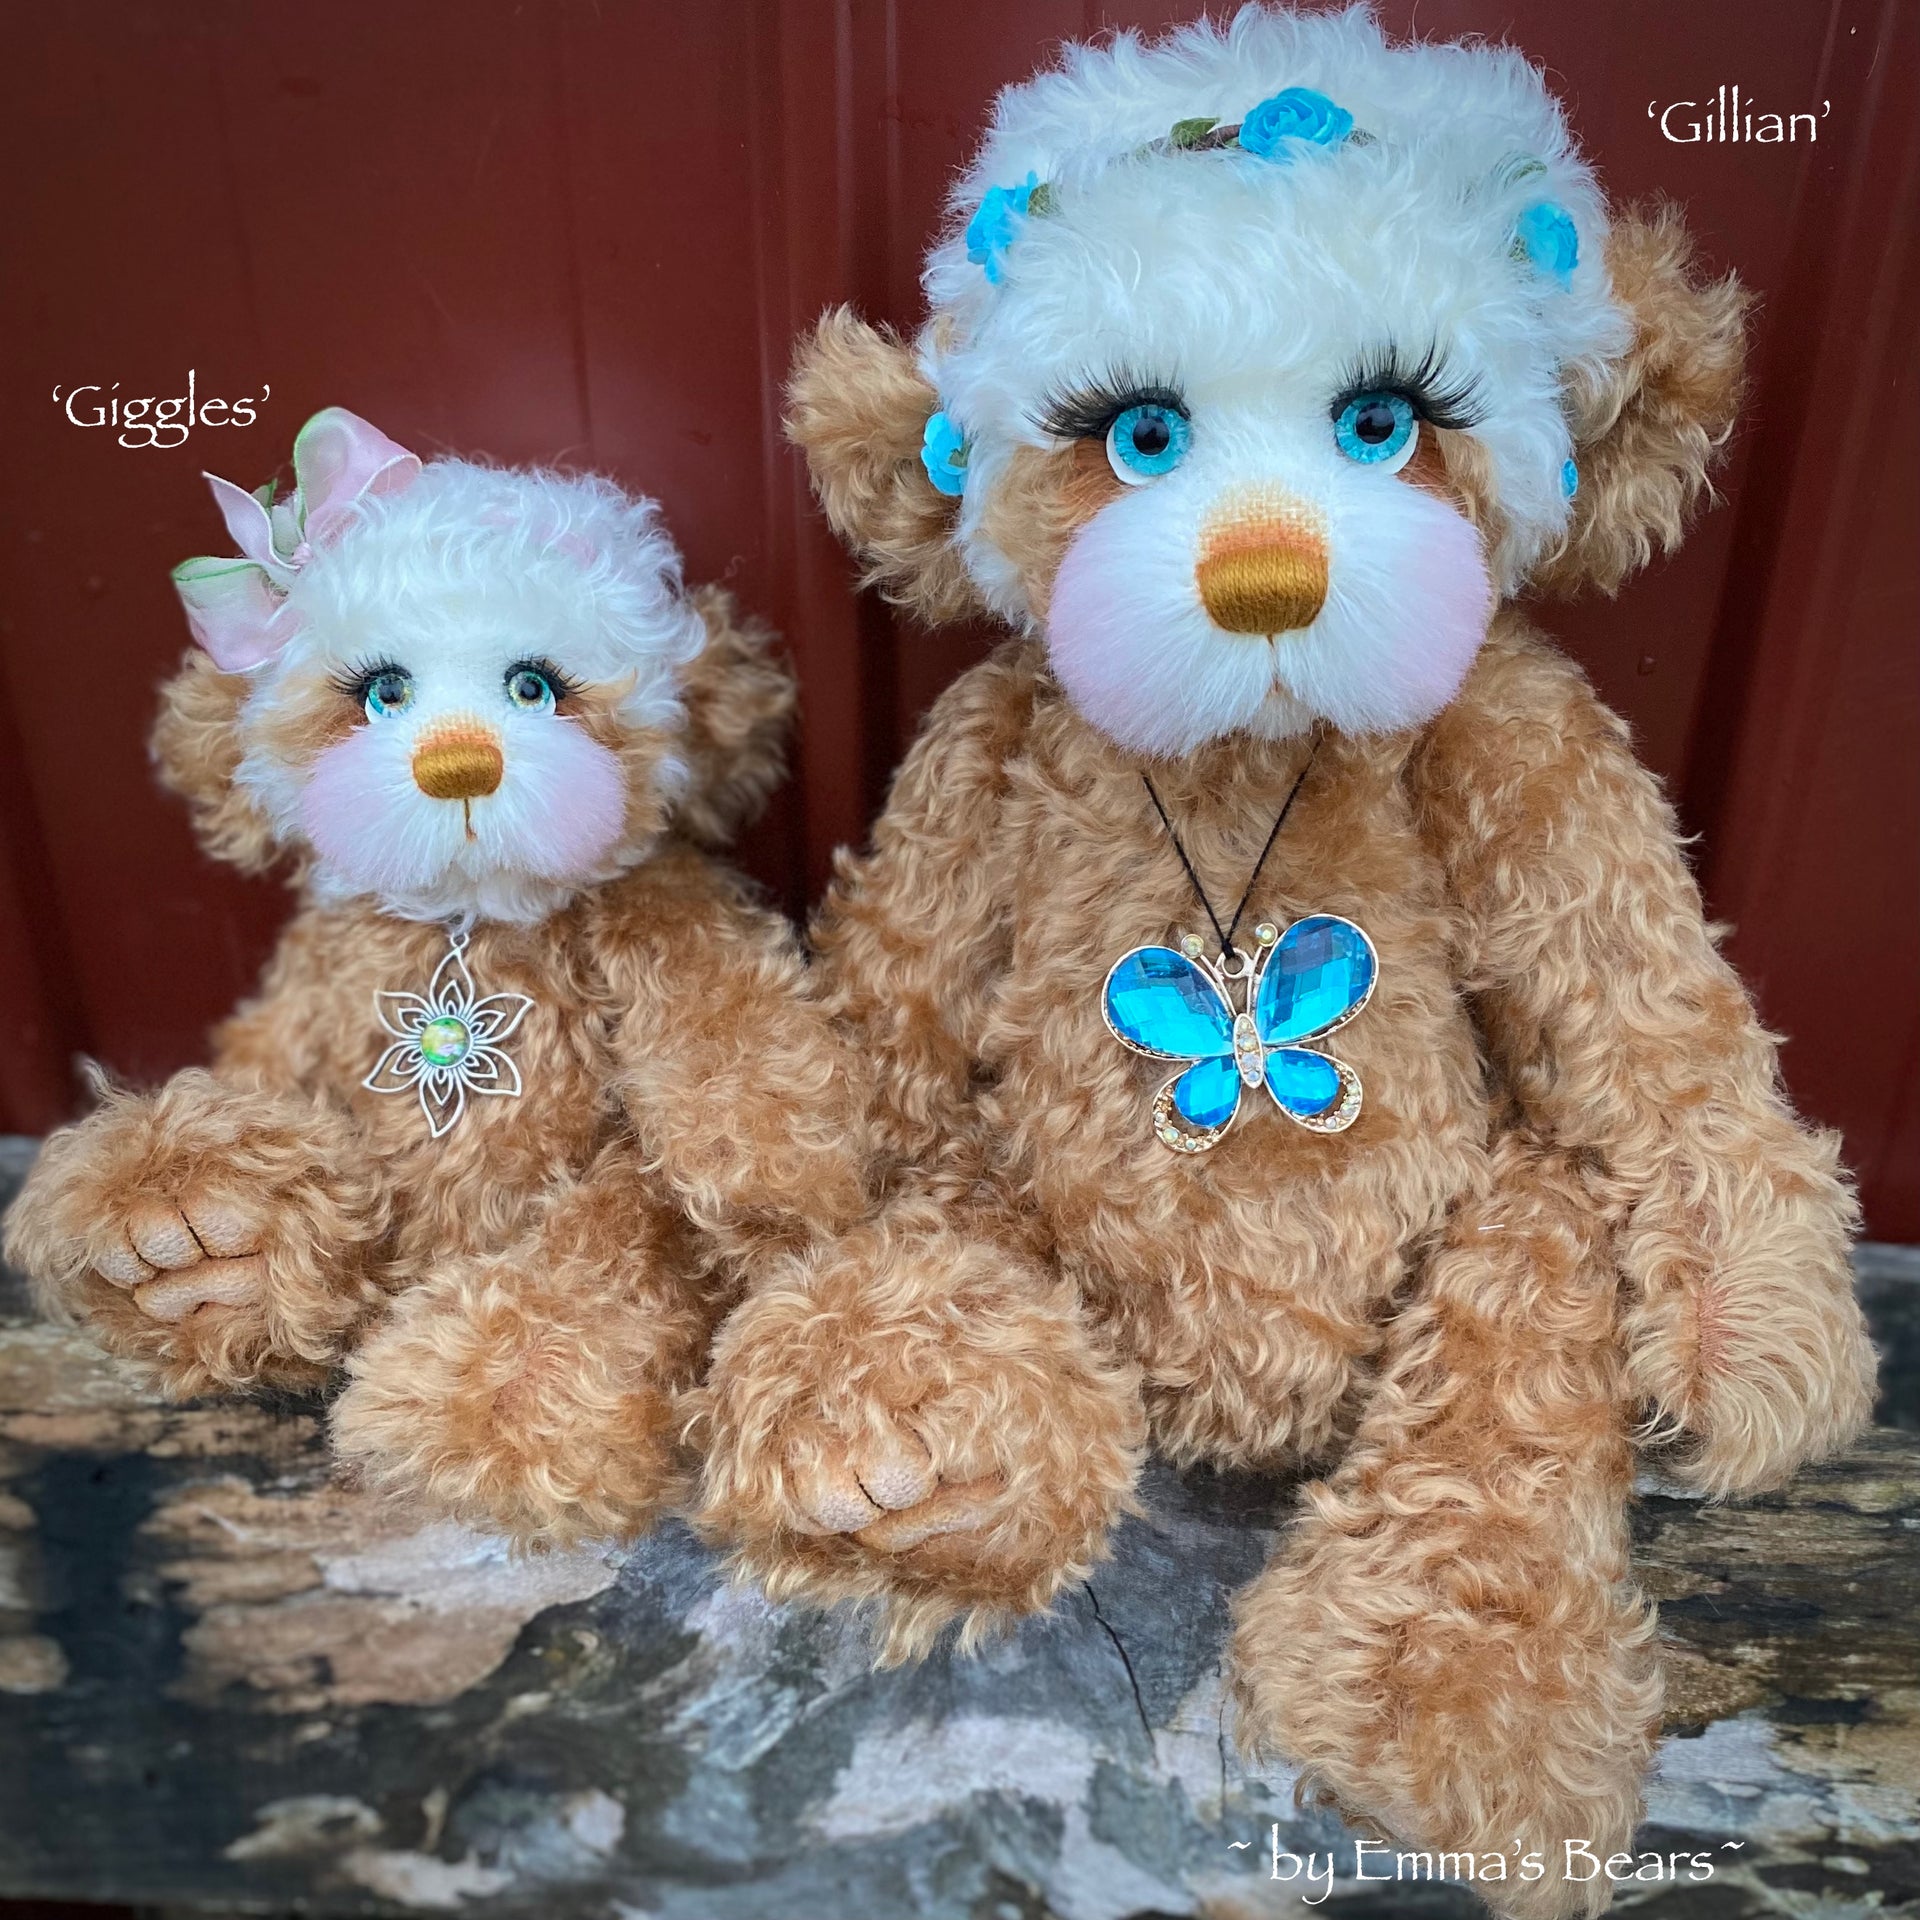 Gillian - 15" Curly Kid Mohair and Alpaca artist bear by Emma's Bears - OOAK